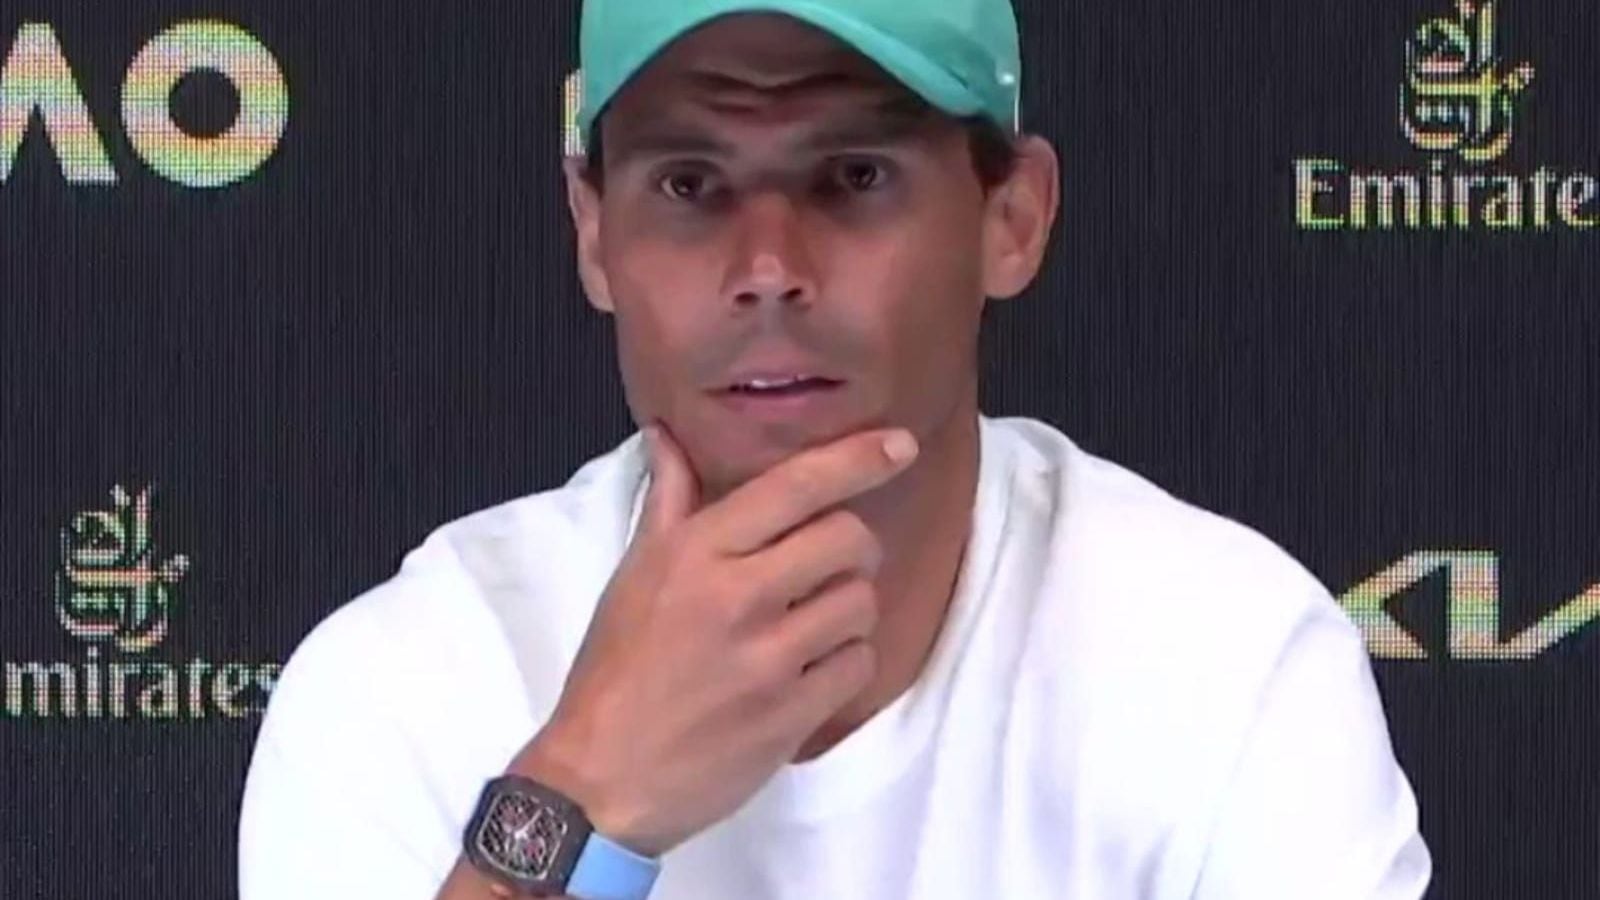 Rafael Nadal participa en el Abierto de Australia con reloj de más de 4 millones de pesos